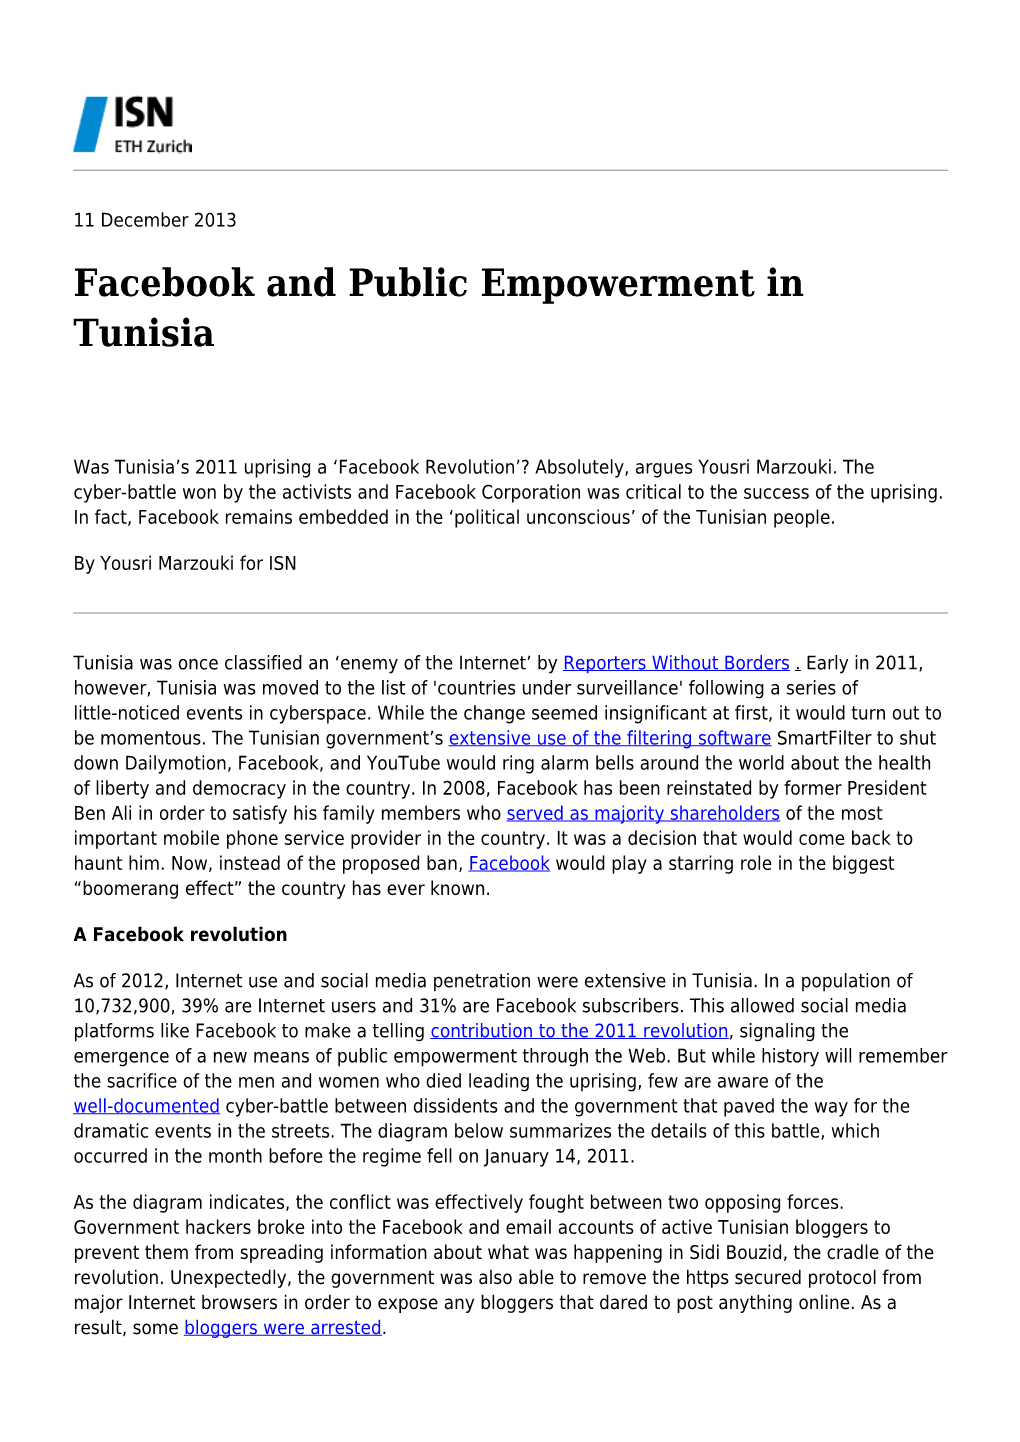 Facebook and Public Empowerment in Tunisia